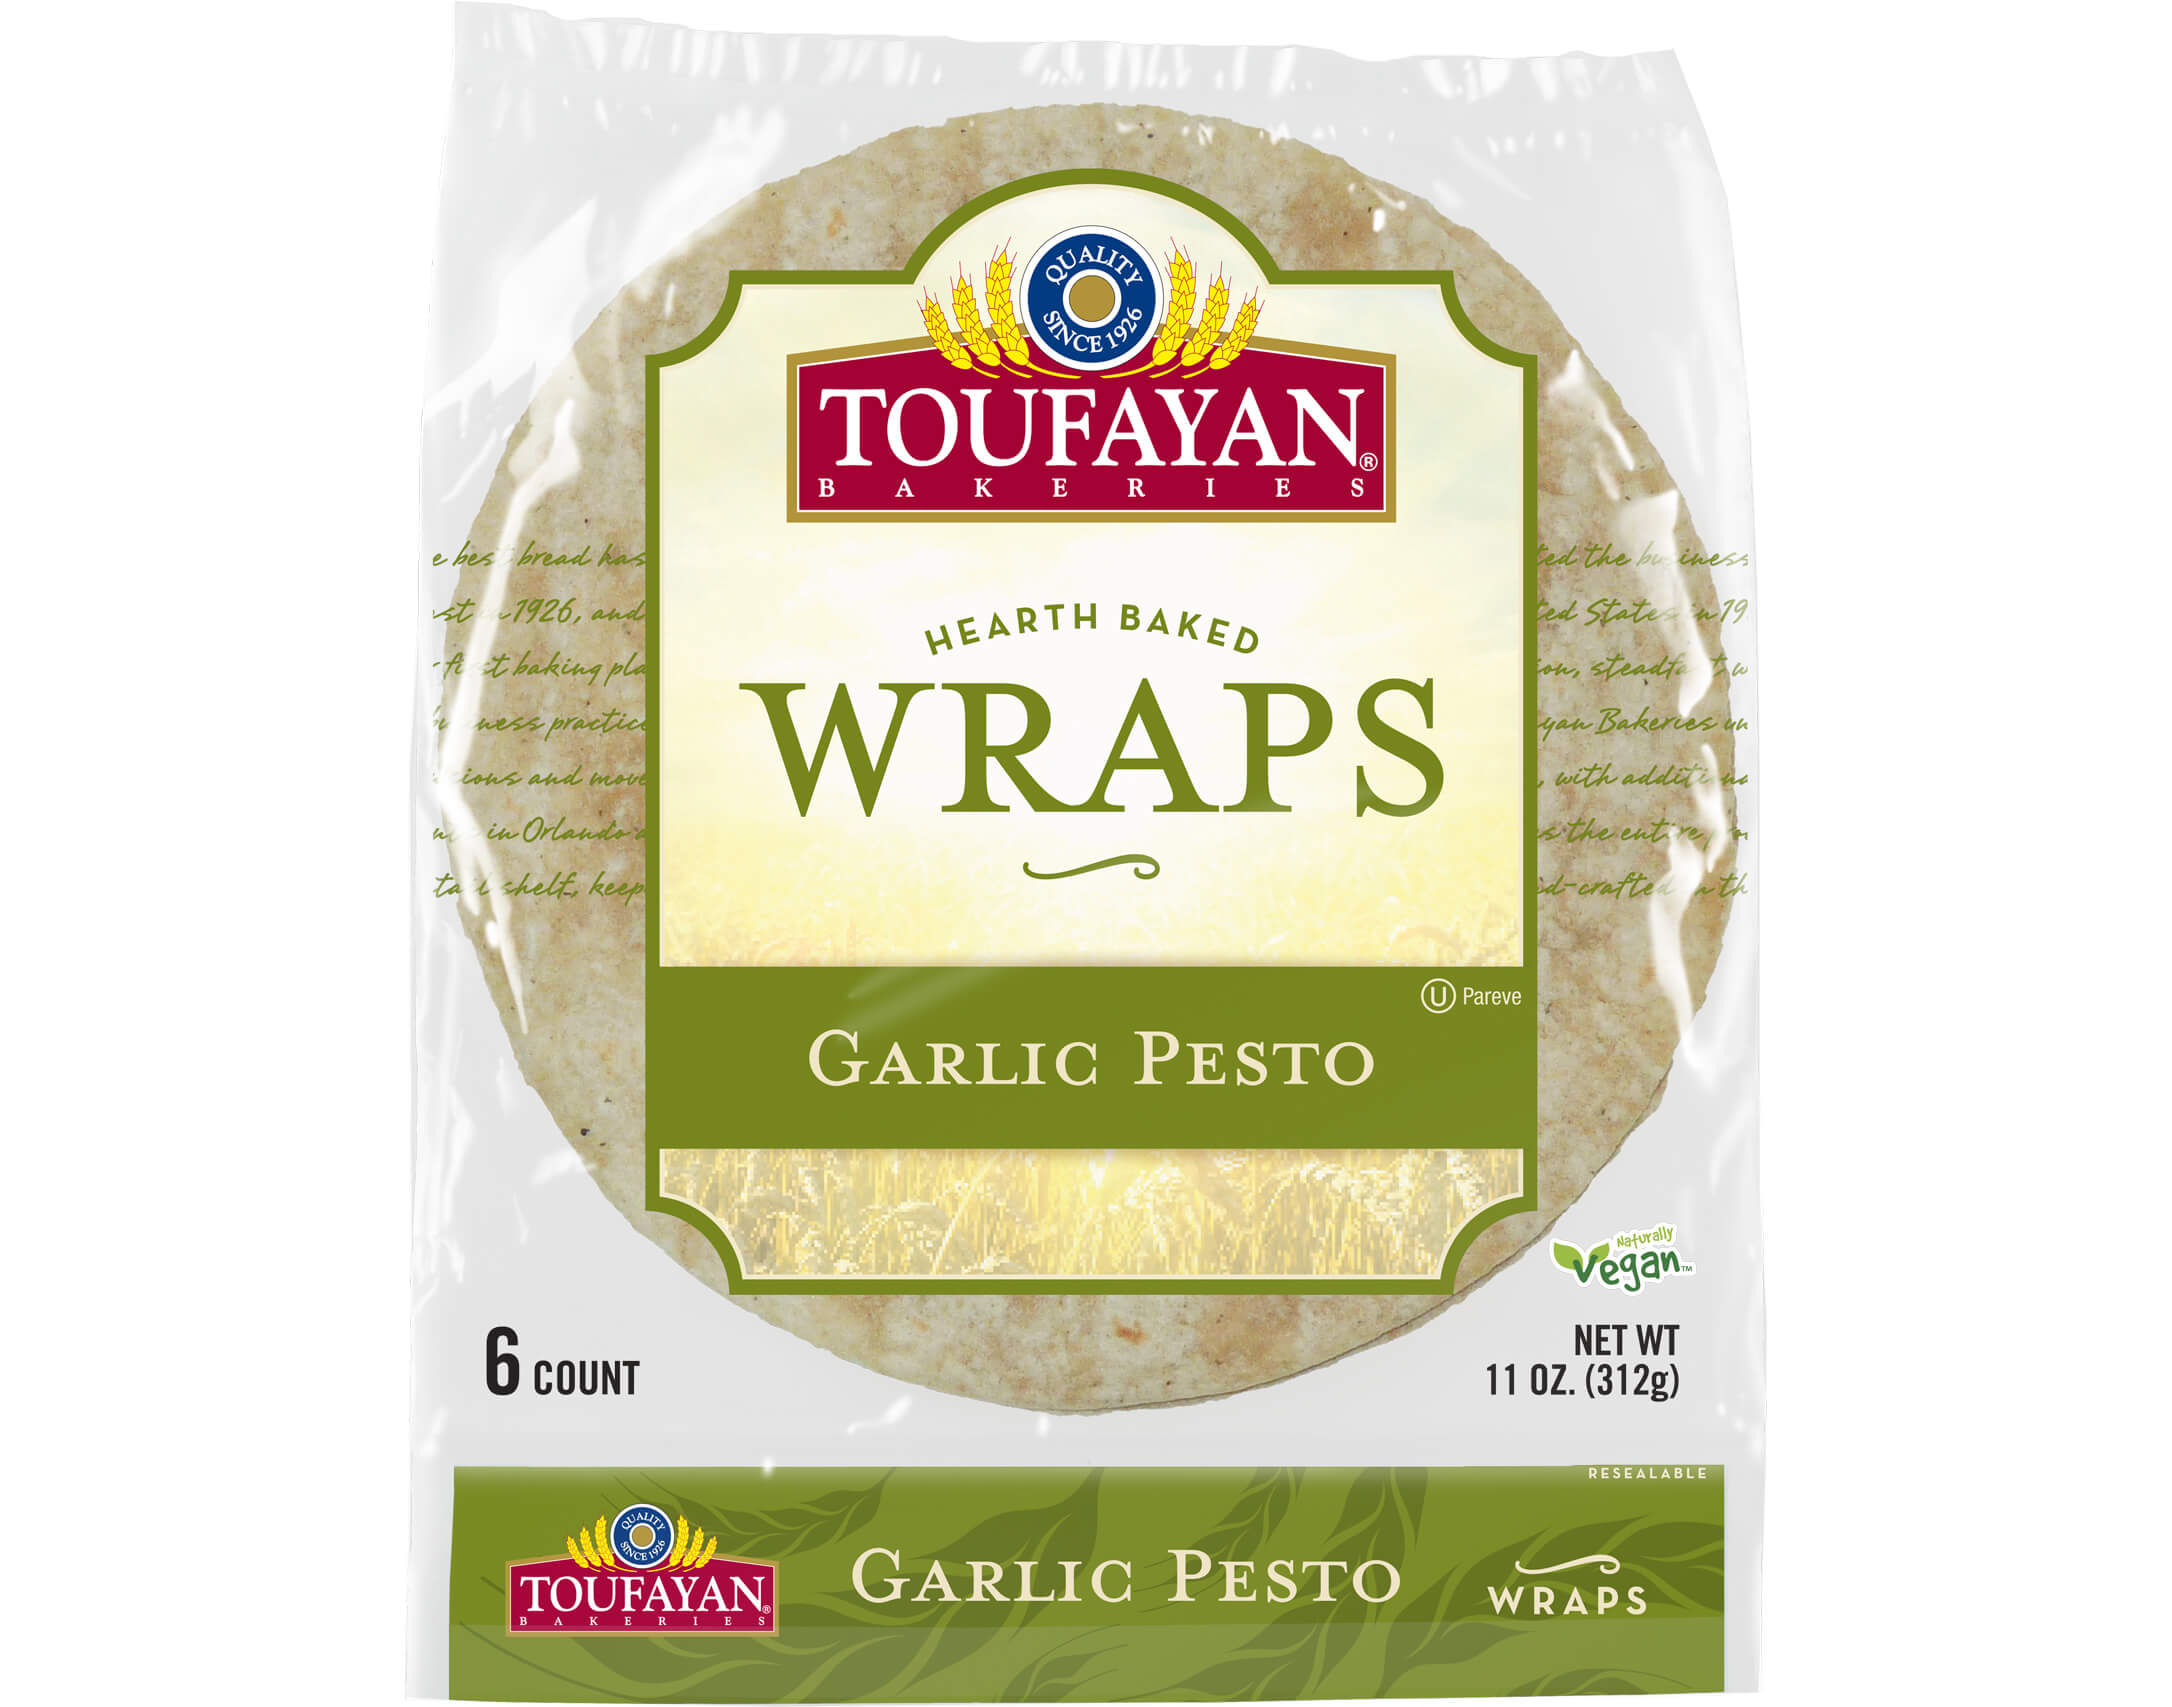 Garlic Pesto Wraps